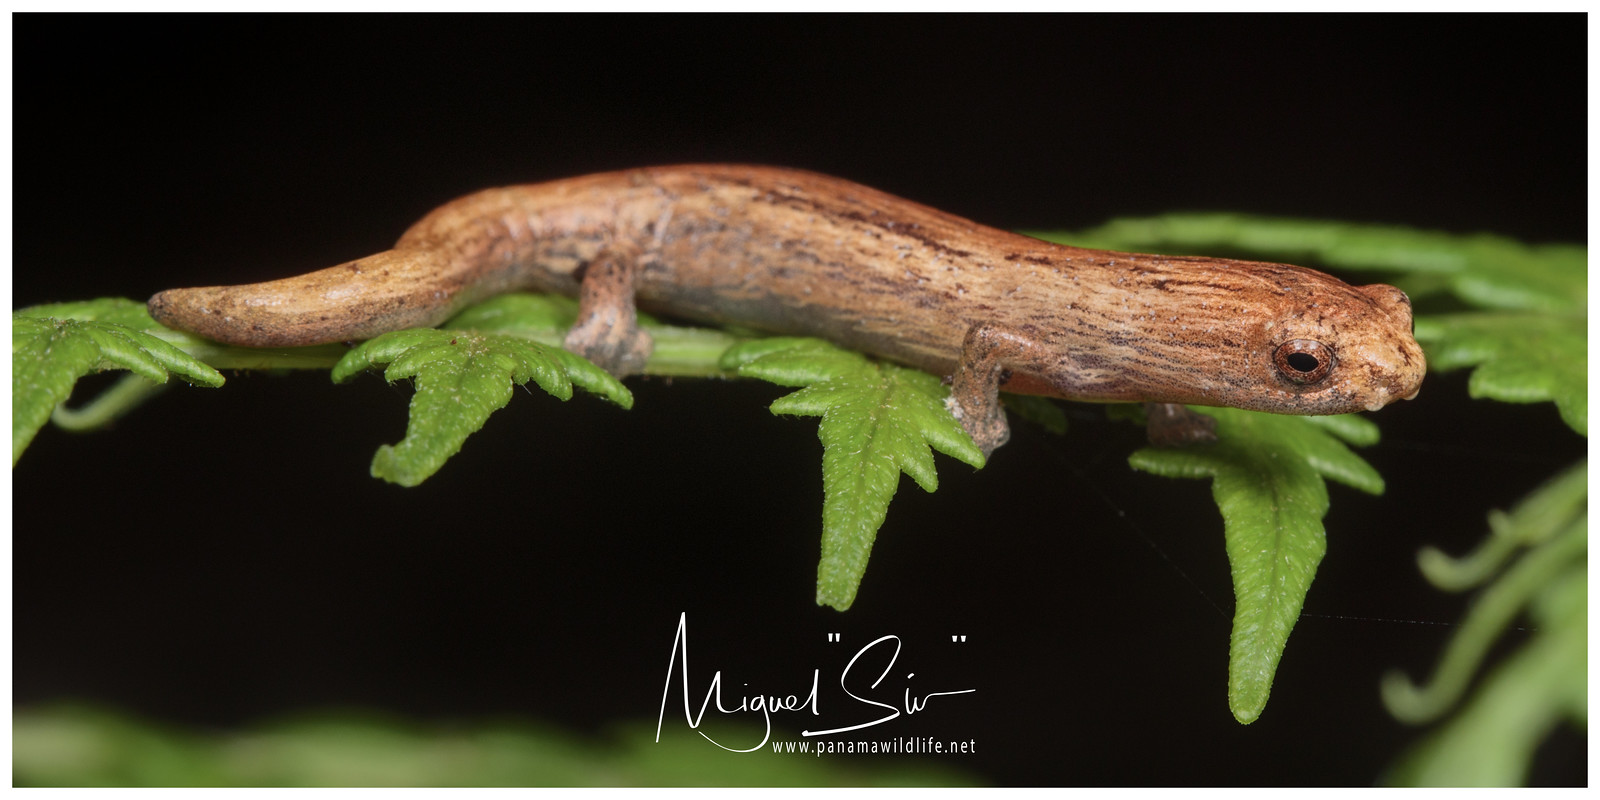 Camron Mushroomtongue Salamander / Salamandra Color Madera